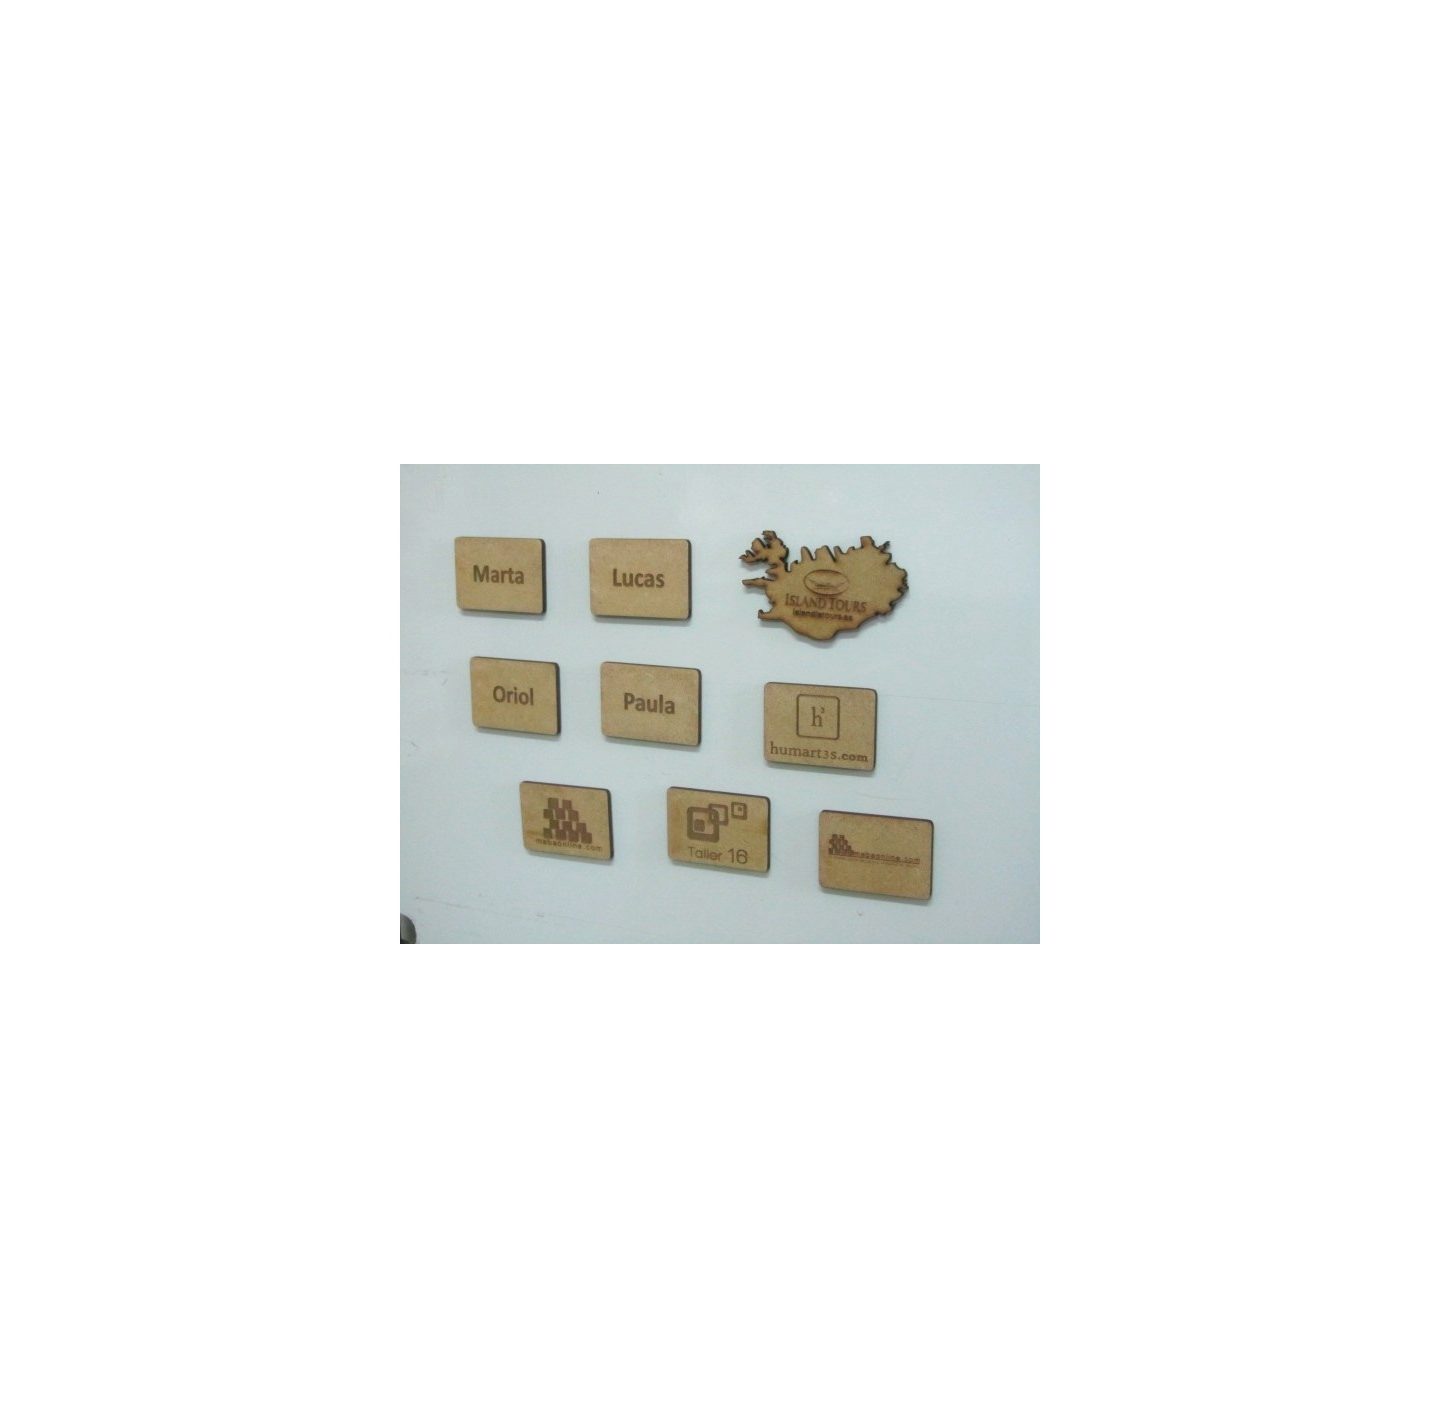 Imanes de madera personalizados con nombre o marca de empresa